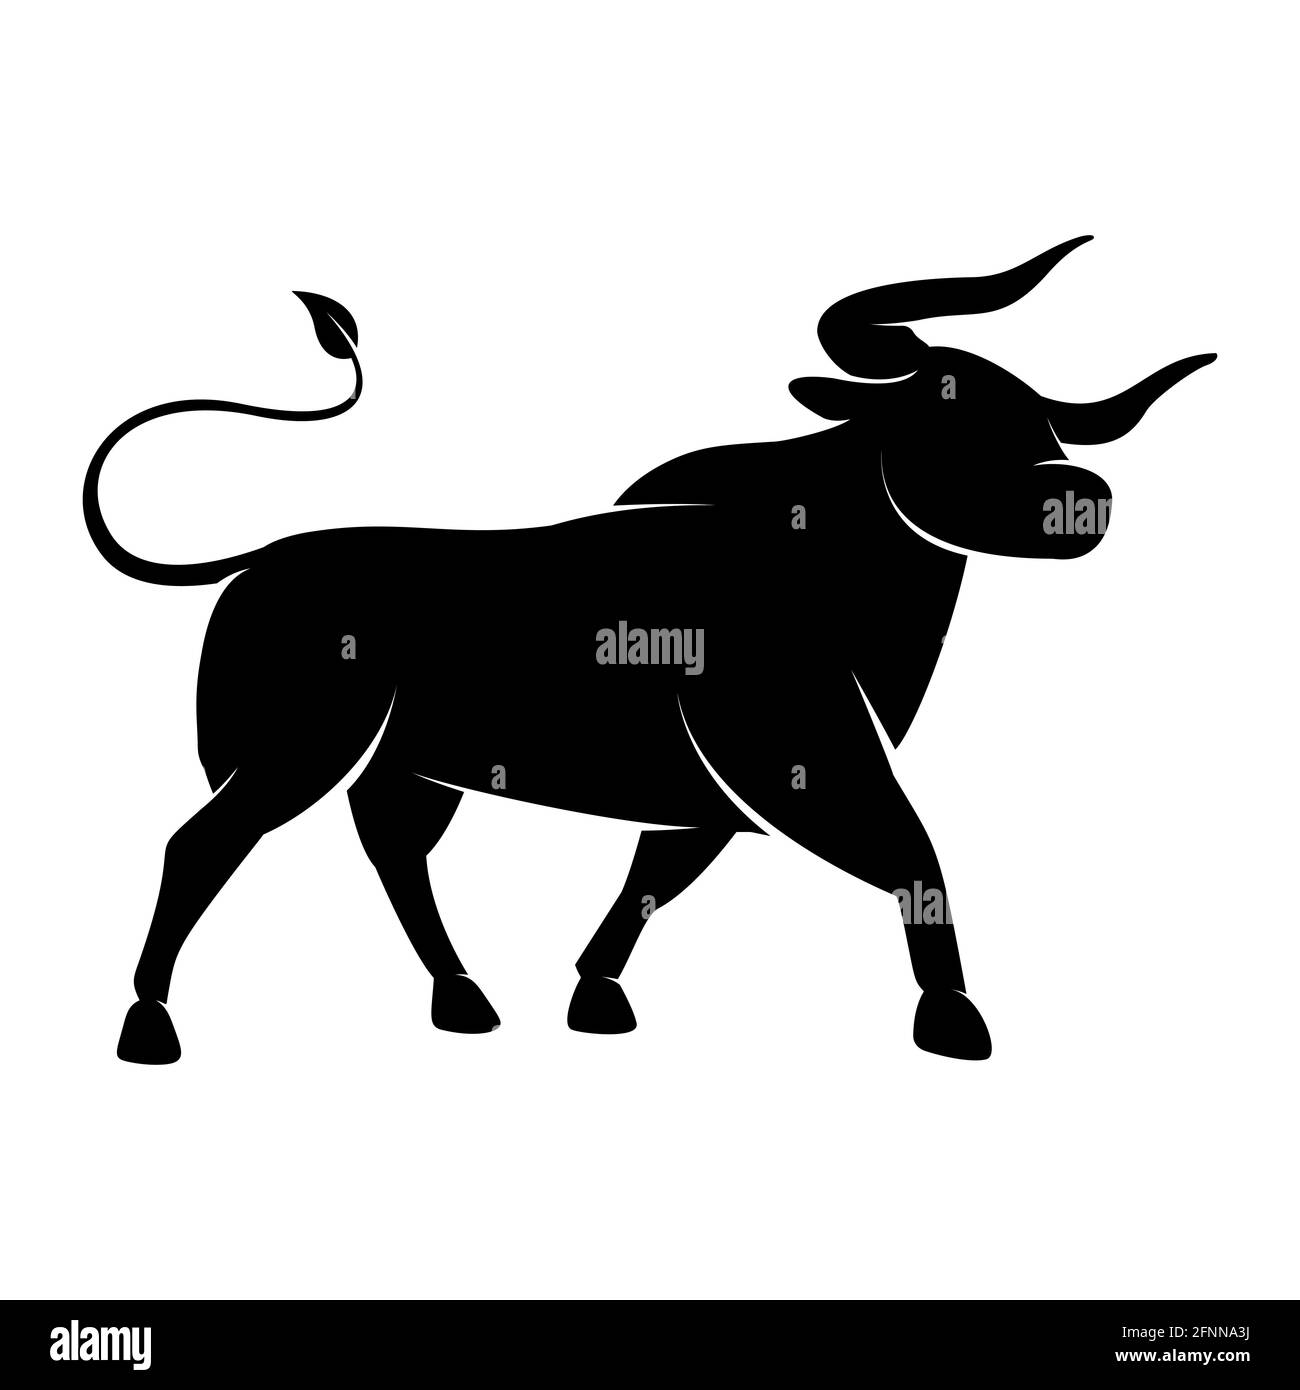 Silhouette noire d'une icône de Bull debout - symbole de l'année dans le calendrier chinois du zodiaque. Illustration vectorielle d'un logo Bison monochrome ou Ox Illustration de Vecteur